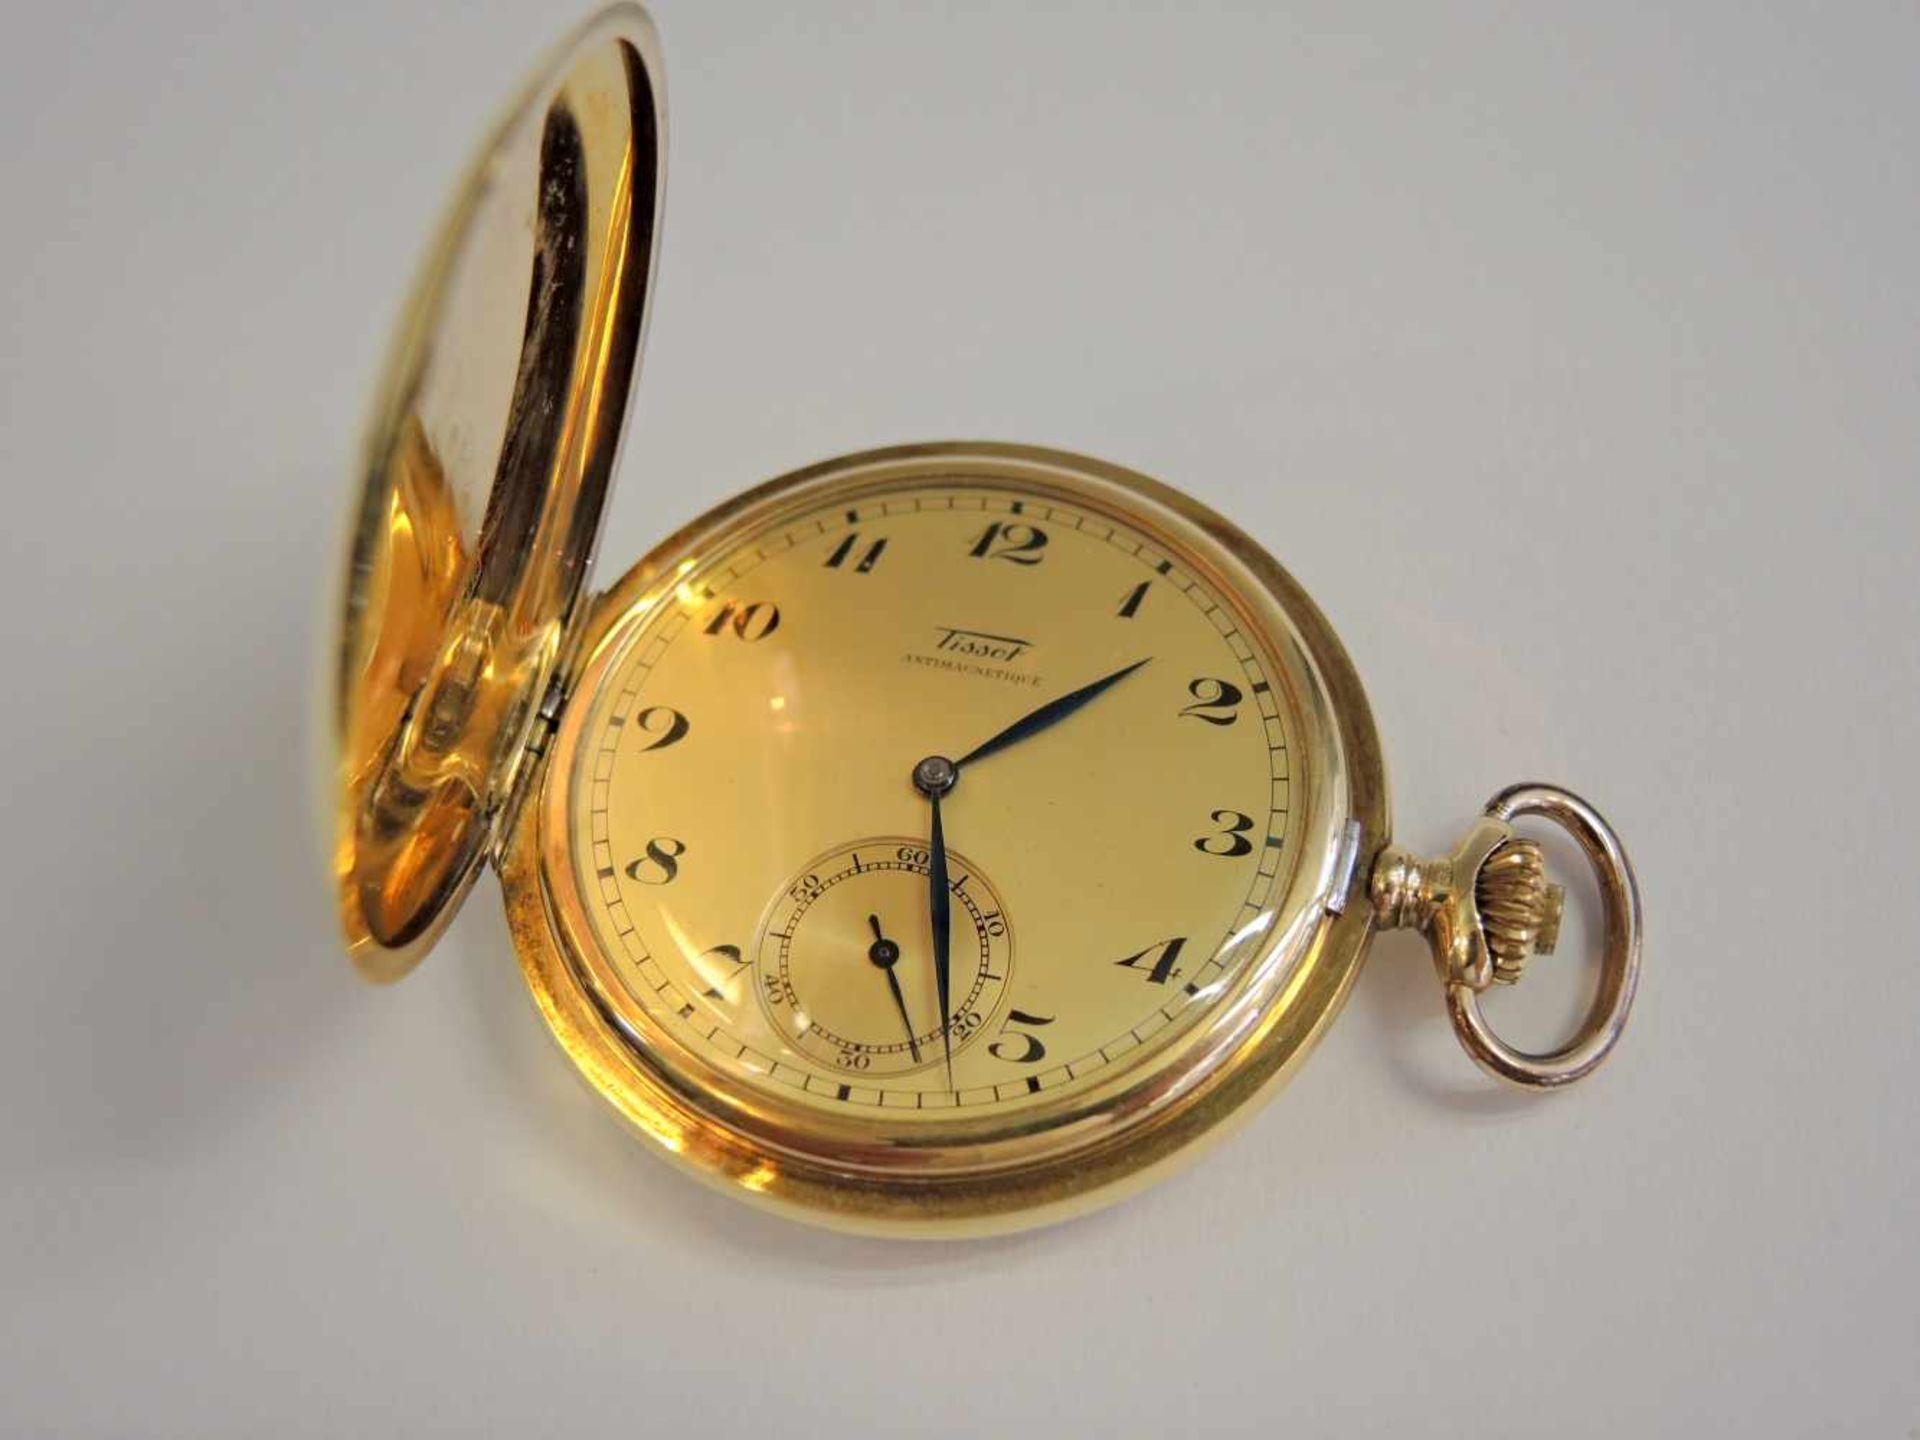 Tissot, Savonette-Taschenuhr14 K. Gelbgold. Gut erhalten, gangbar. Um 1920. Ø ca. 50 mm, Gewicht